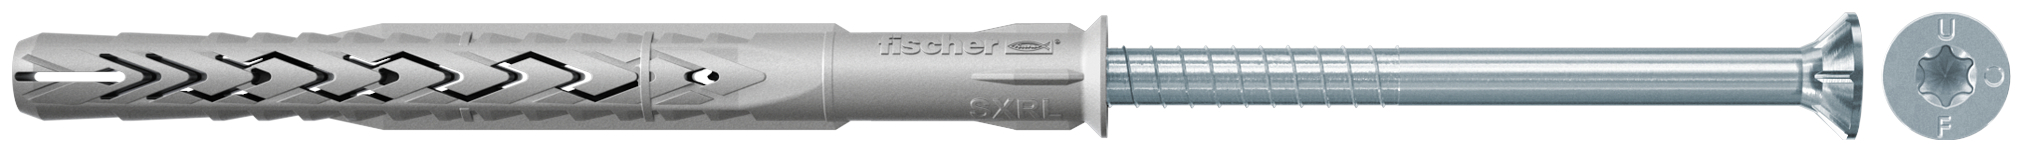 fischer Tasselli prolungati SXRL 10X100 T (1 Pz.) Tassello prolungato in nylon con marcatura CE con vite premontata T.S.P. impronta torx fie2366